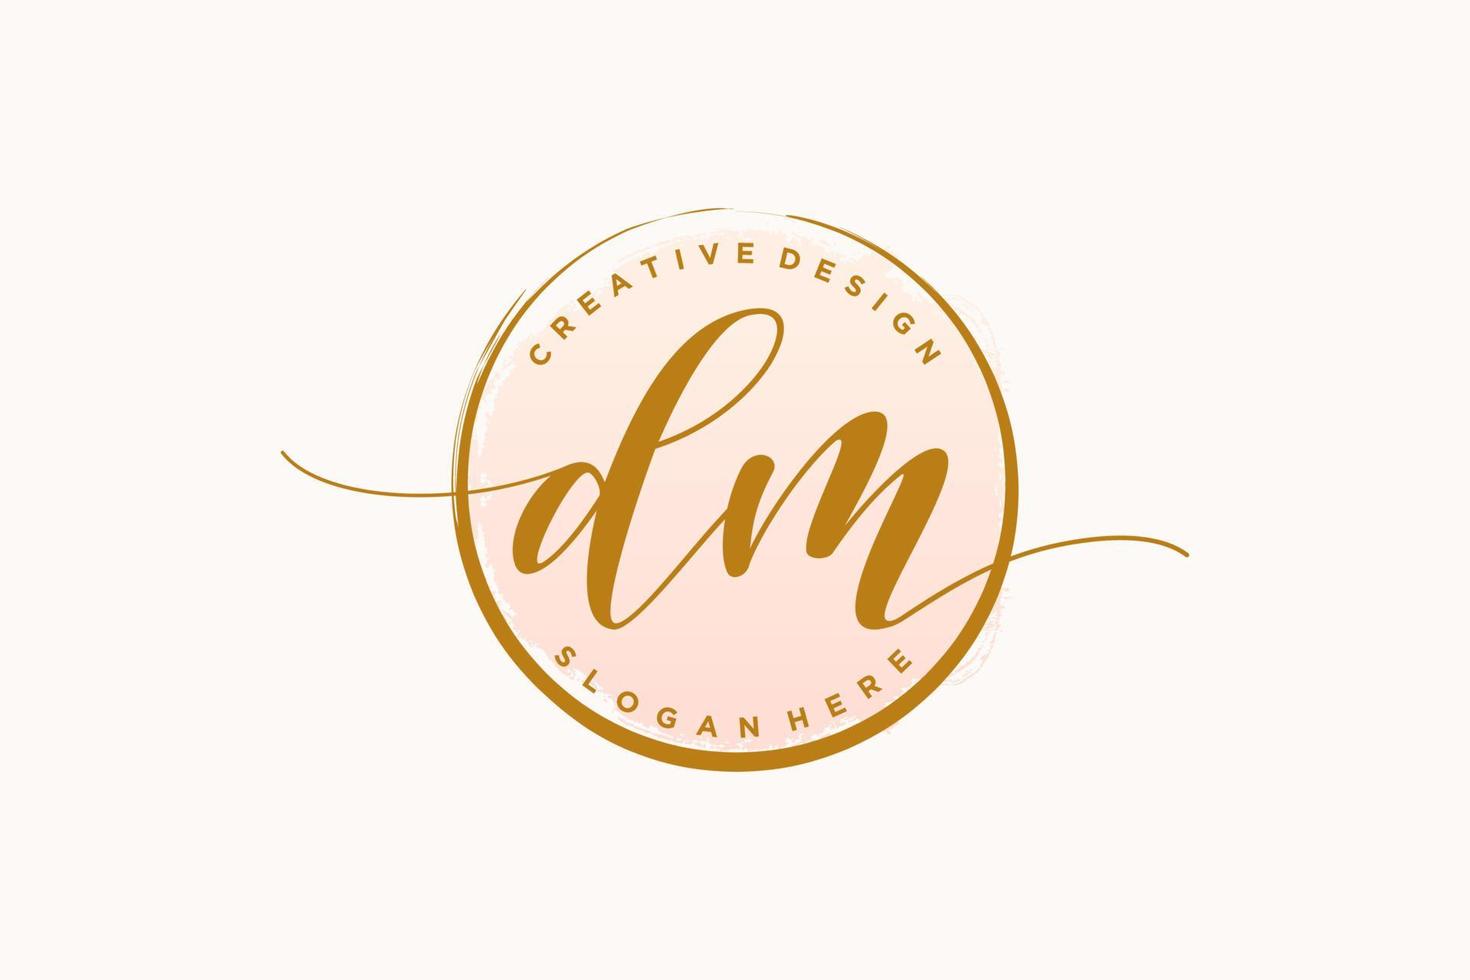 logo initial d'écriture manuscrite dm avec signature vectorielle de modèle de cercle, mariage, mode, floral et botanique avec modèle créatif. vecteur